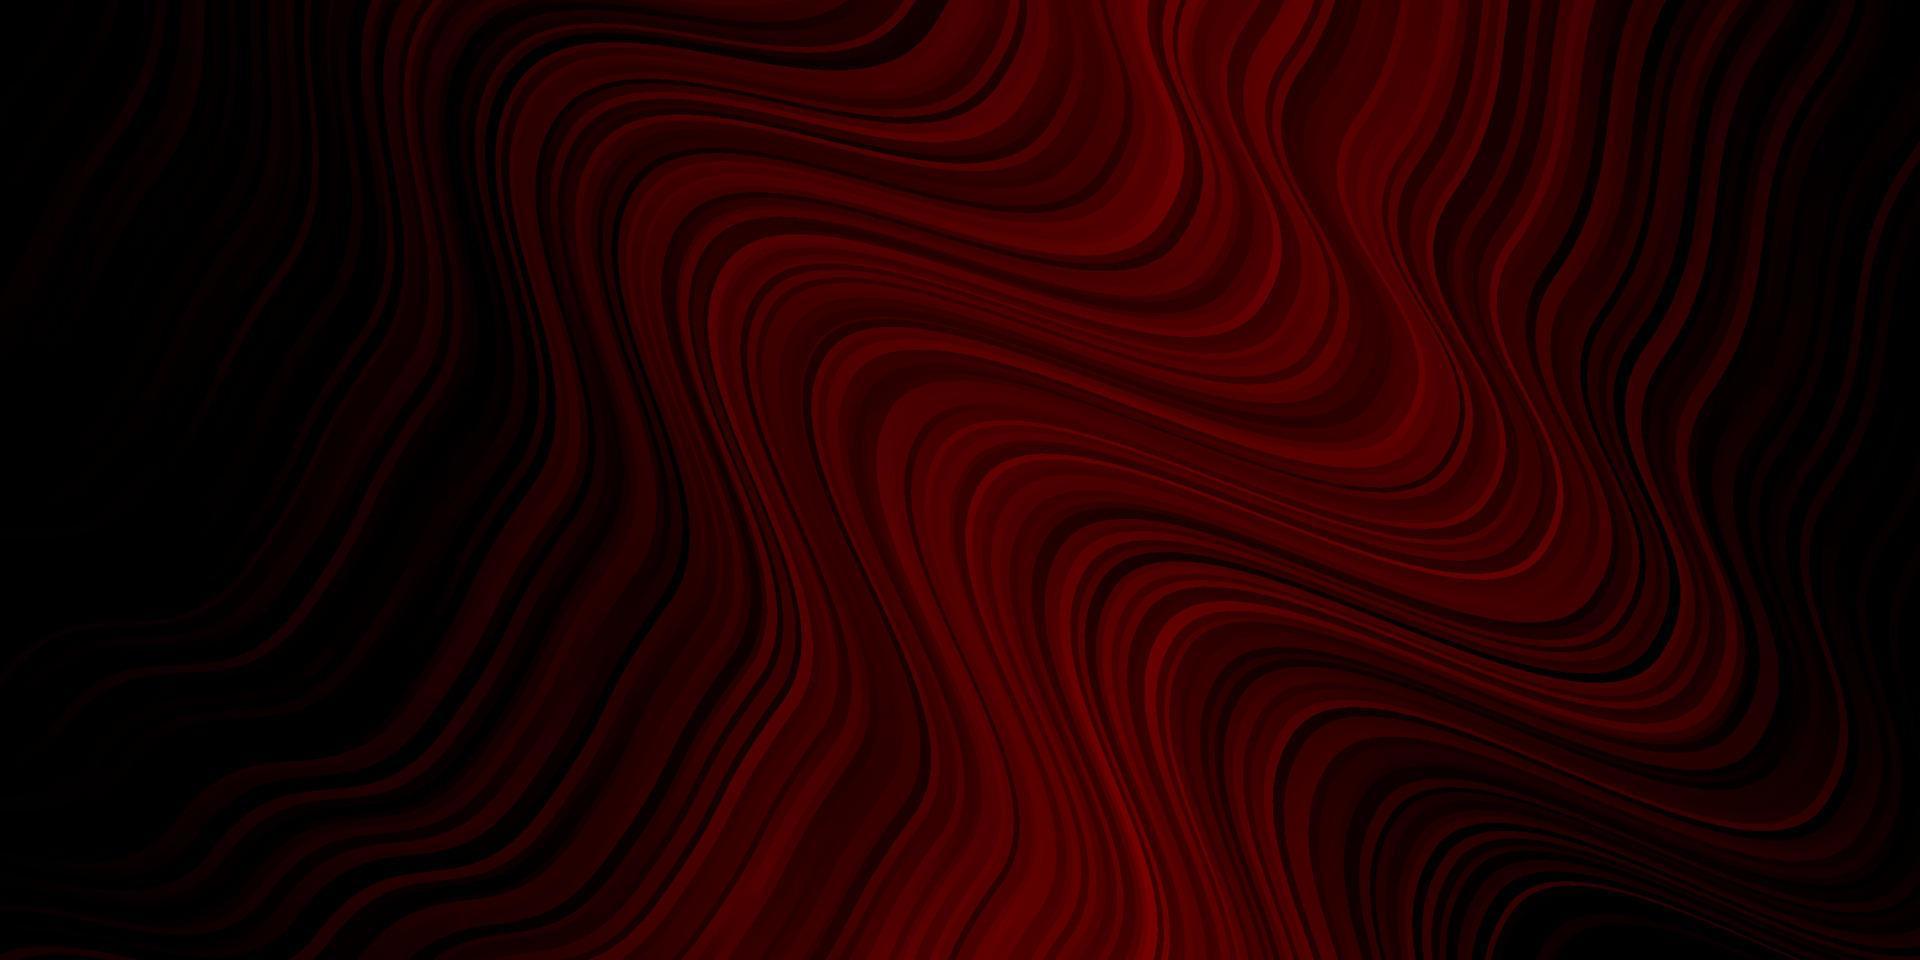 mörk röd vektor bakgrund med böjda linjer.